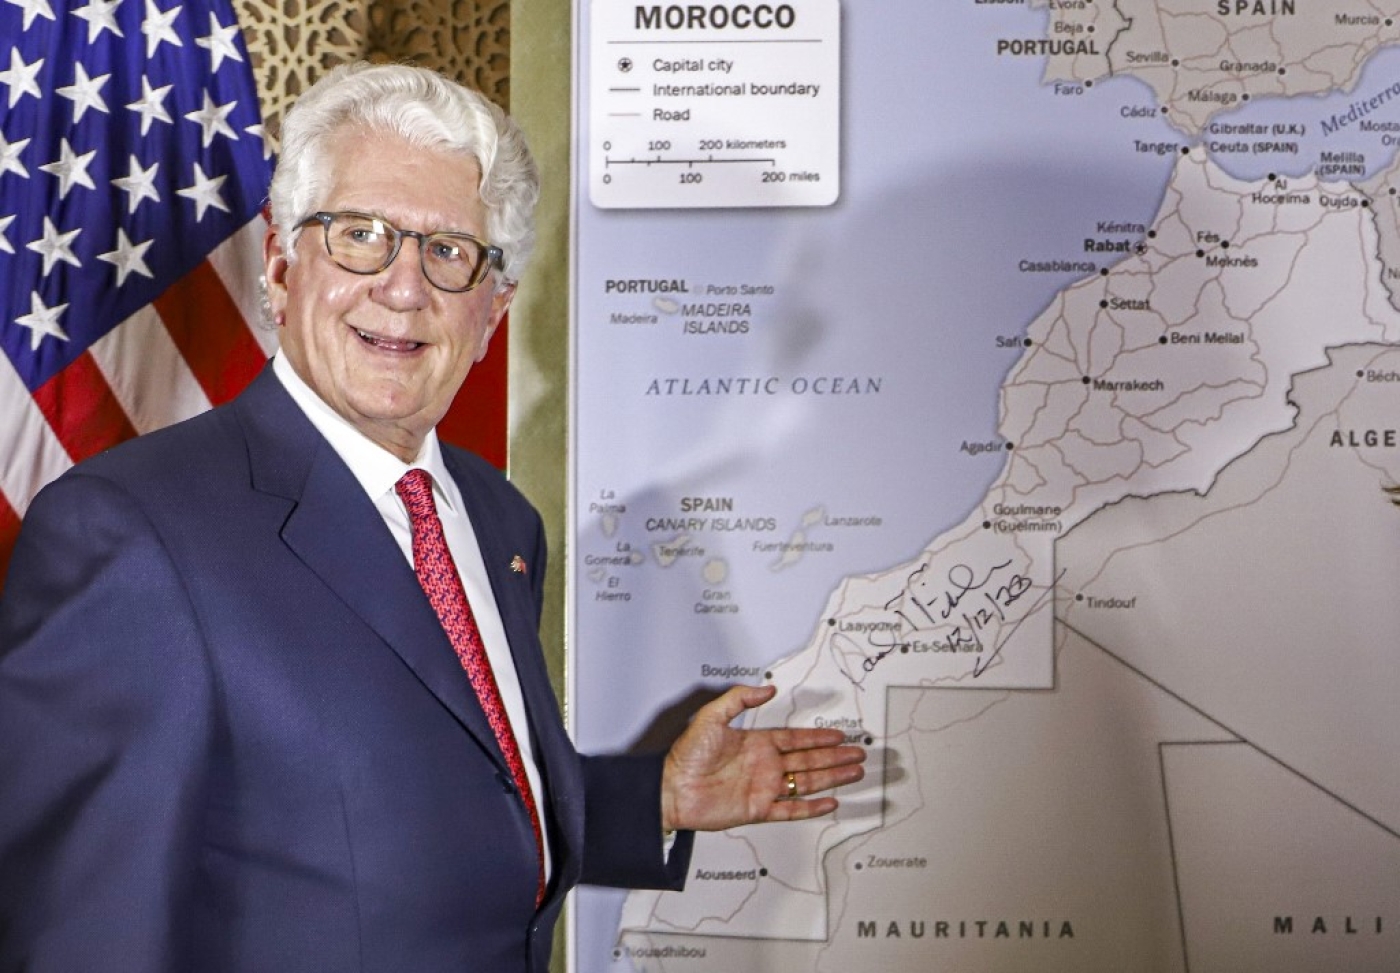 L’ambassadeur américain au Maroc David T. Fischer devant une carte du Maroc autorisée par le département d’État américain reconnaissant le territoire internationalement contesté du Sahara occidental, à Rabat, le 12 décembre 2020 (AFP)